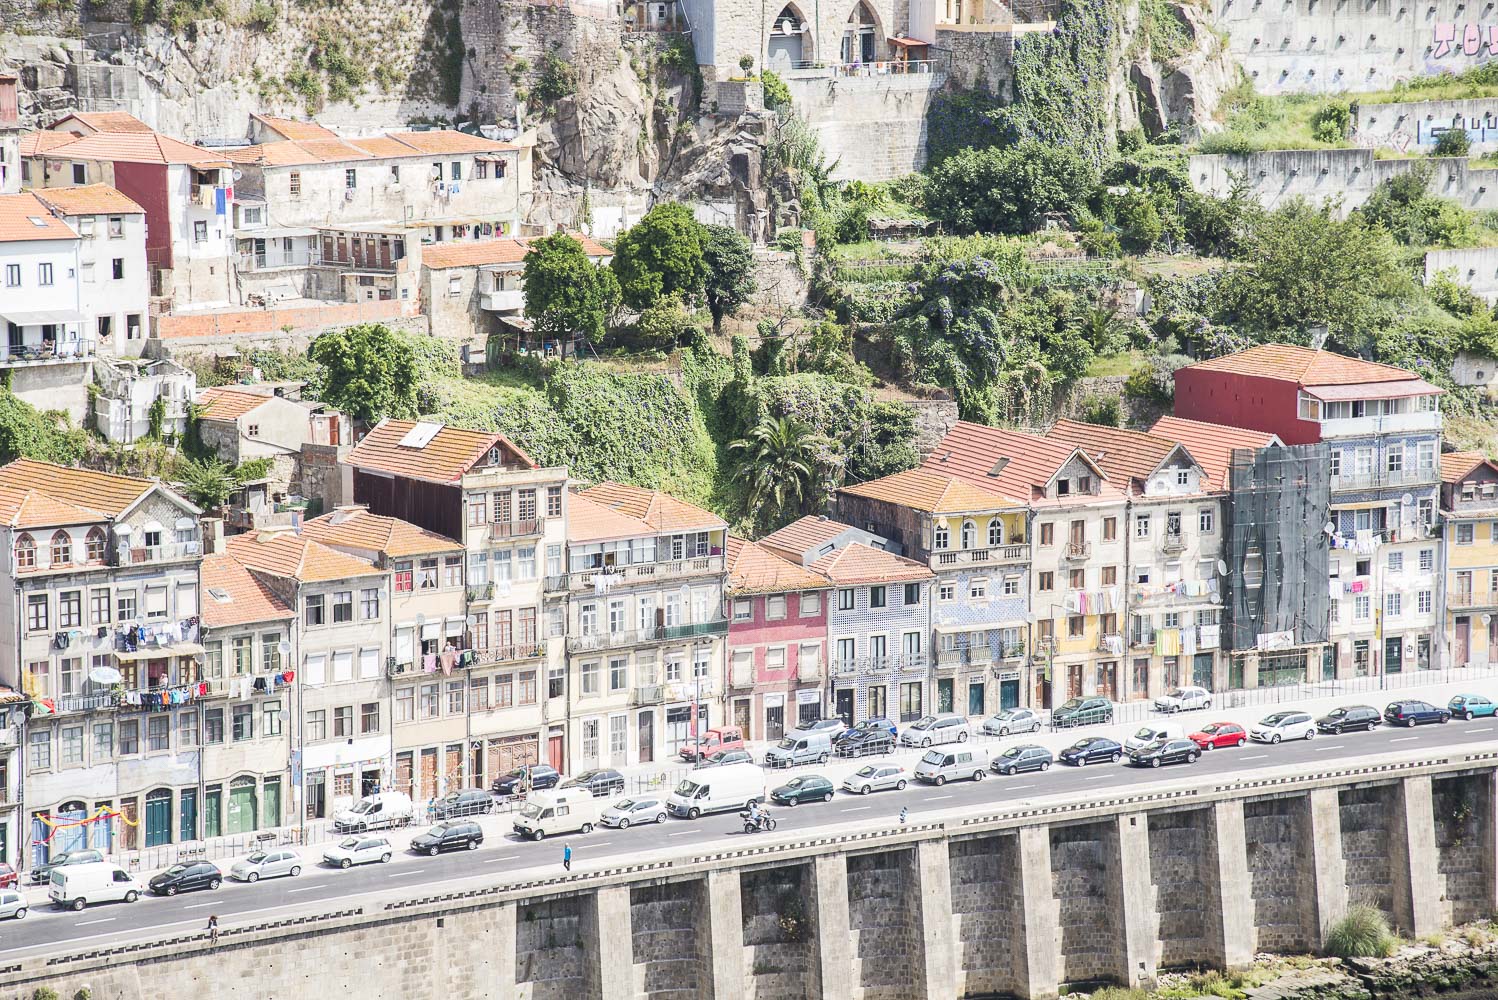 The cityscape of Porto.jpg